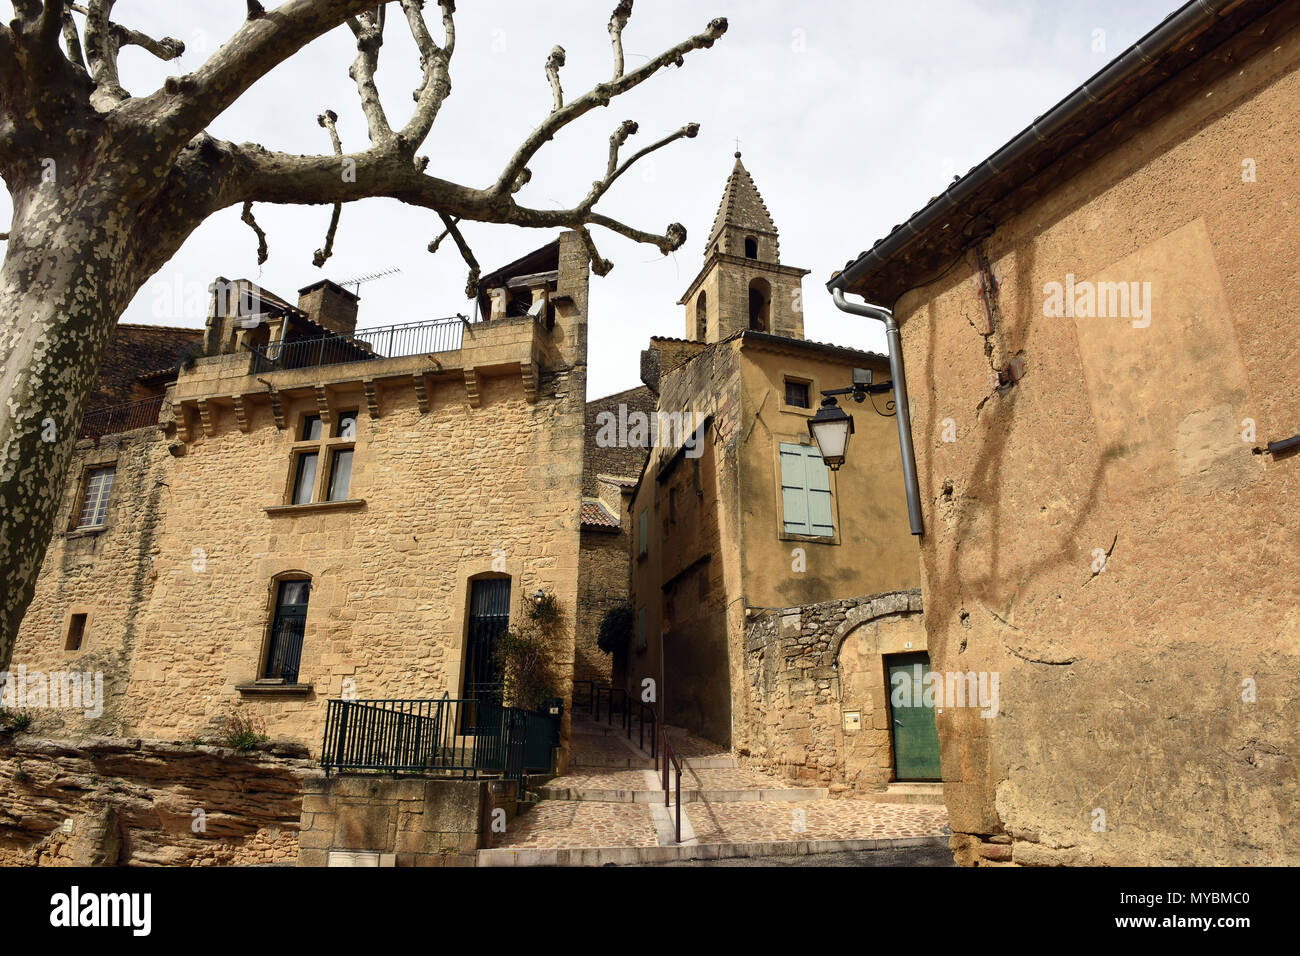 Le village de Castillon-du-Gard une commune française, située dans le département du Gard, dans le sud de la France. Banque D'Images